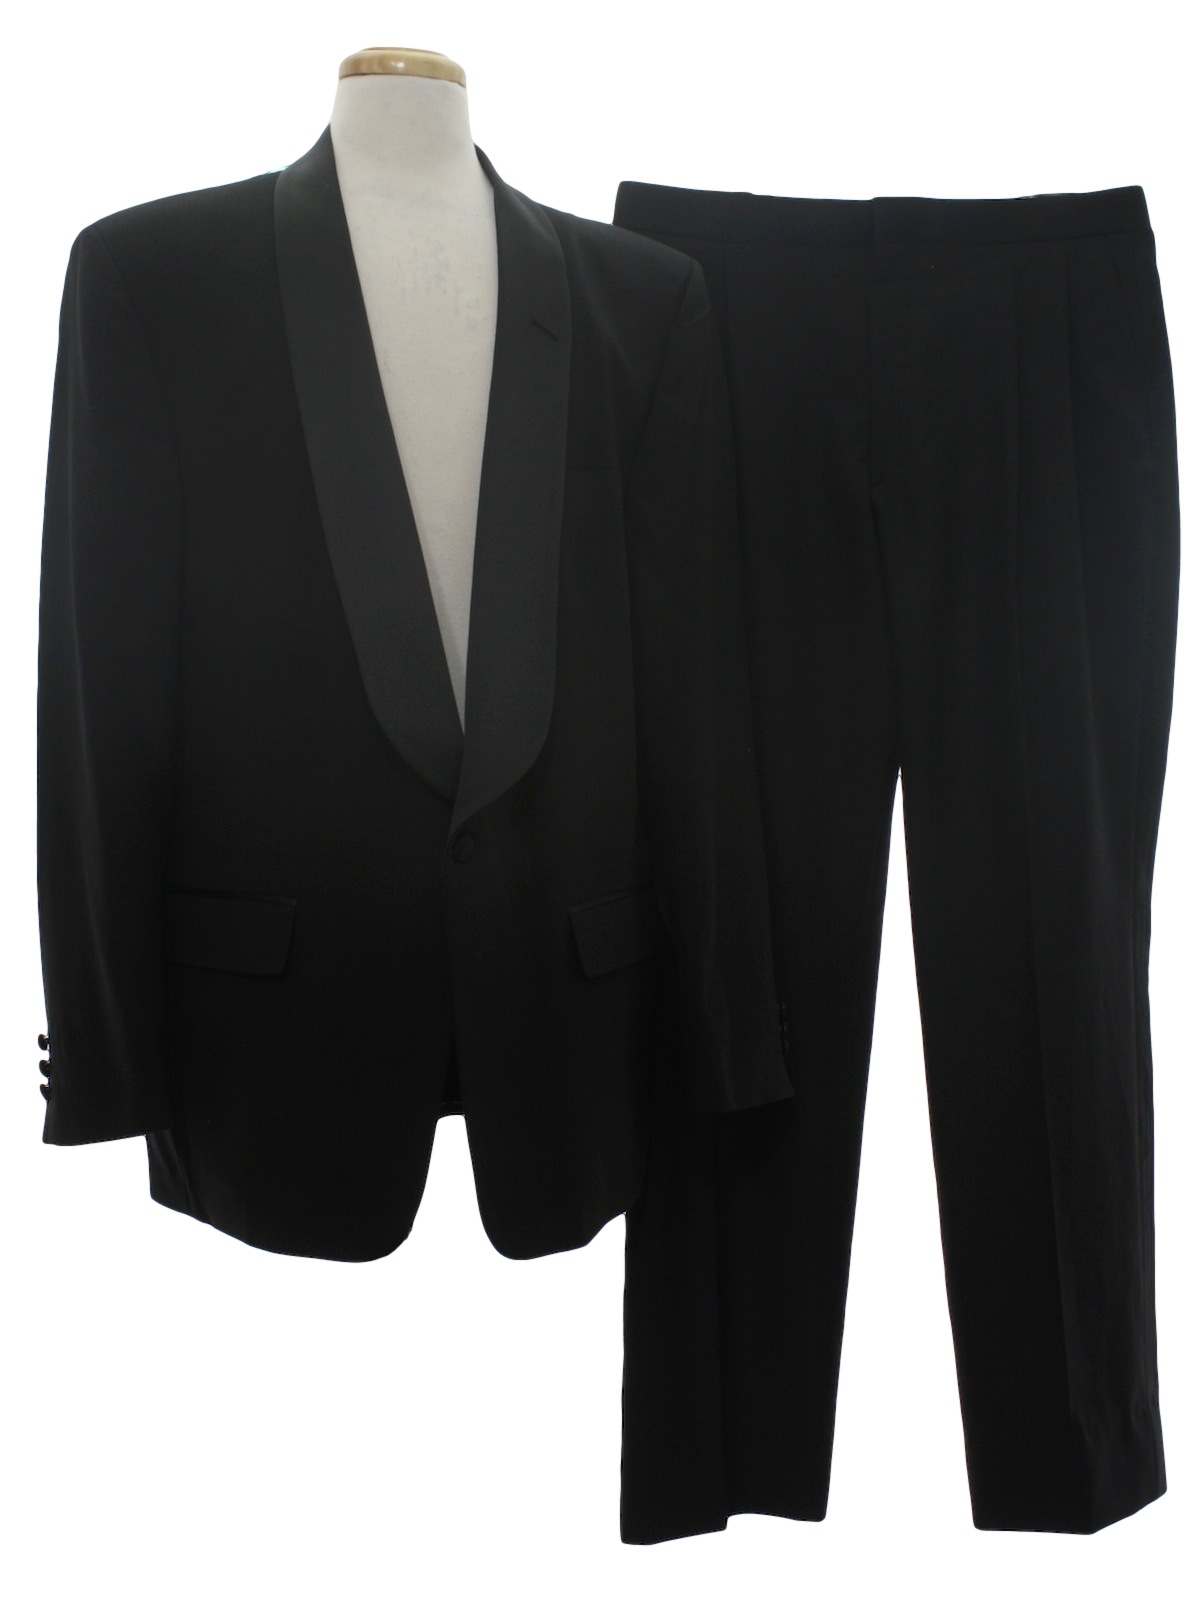 80s Retro Suit: 80s -Bill Blass- Mens two piece tuxedo suit with black ...